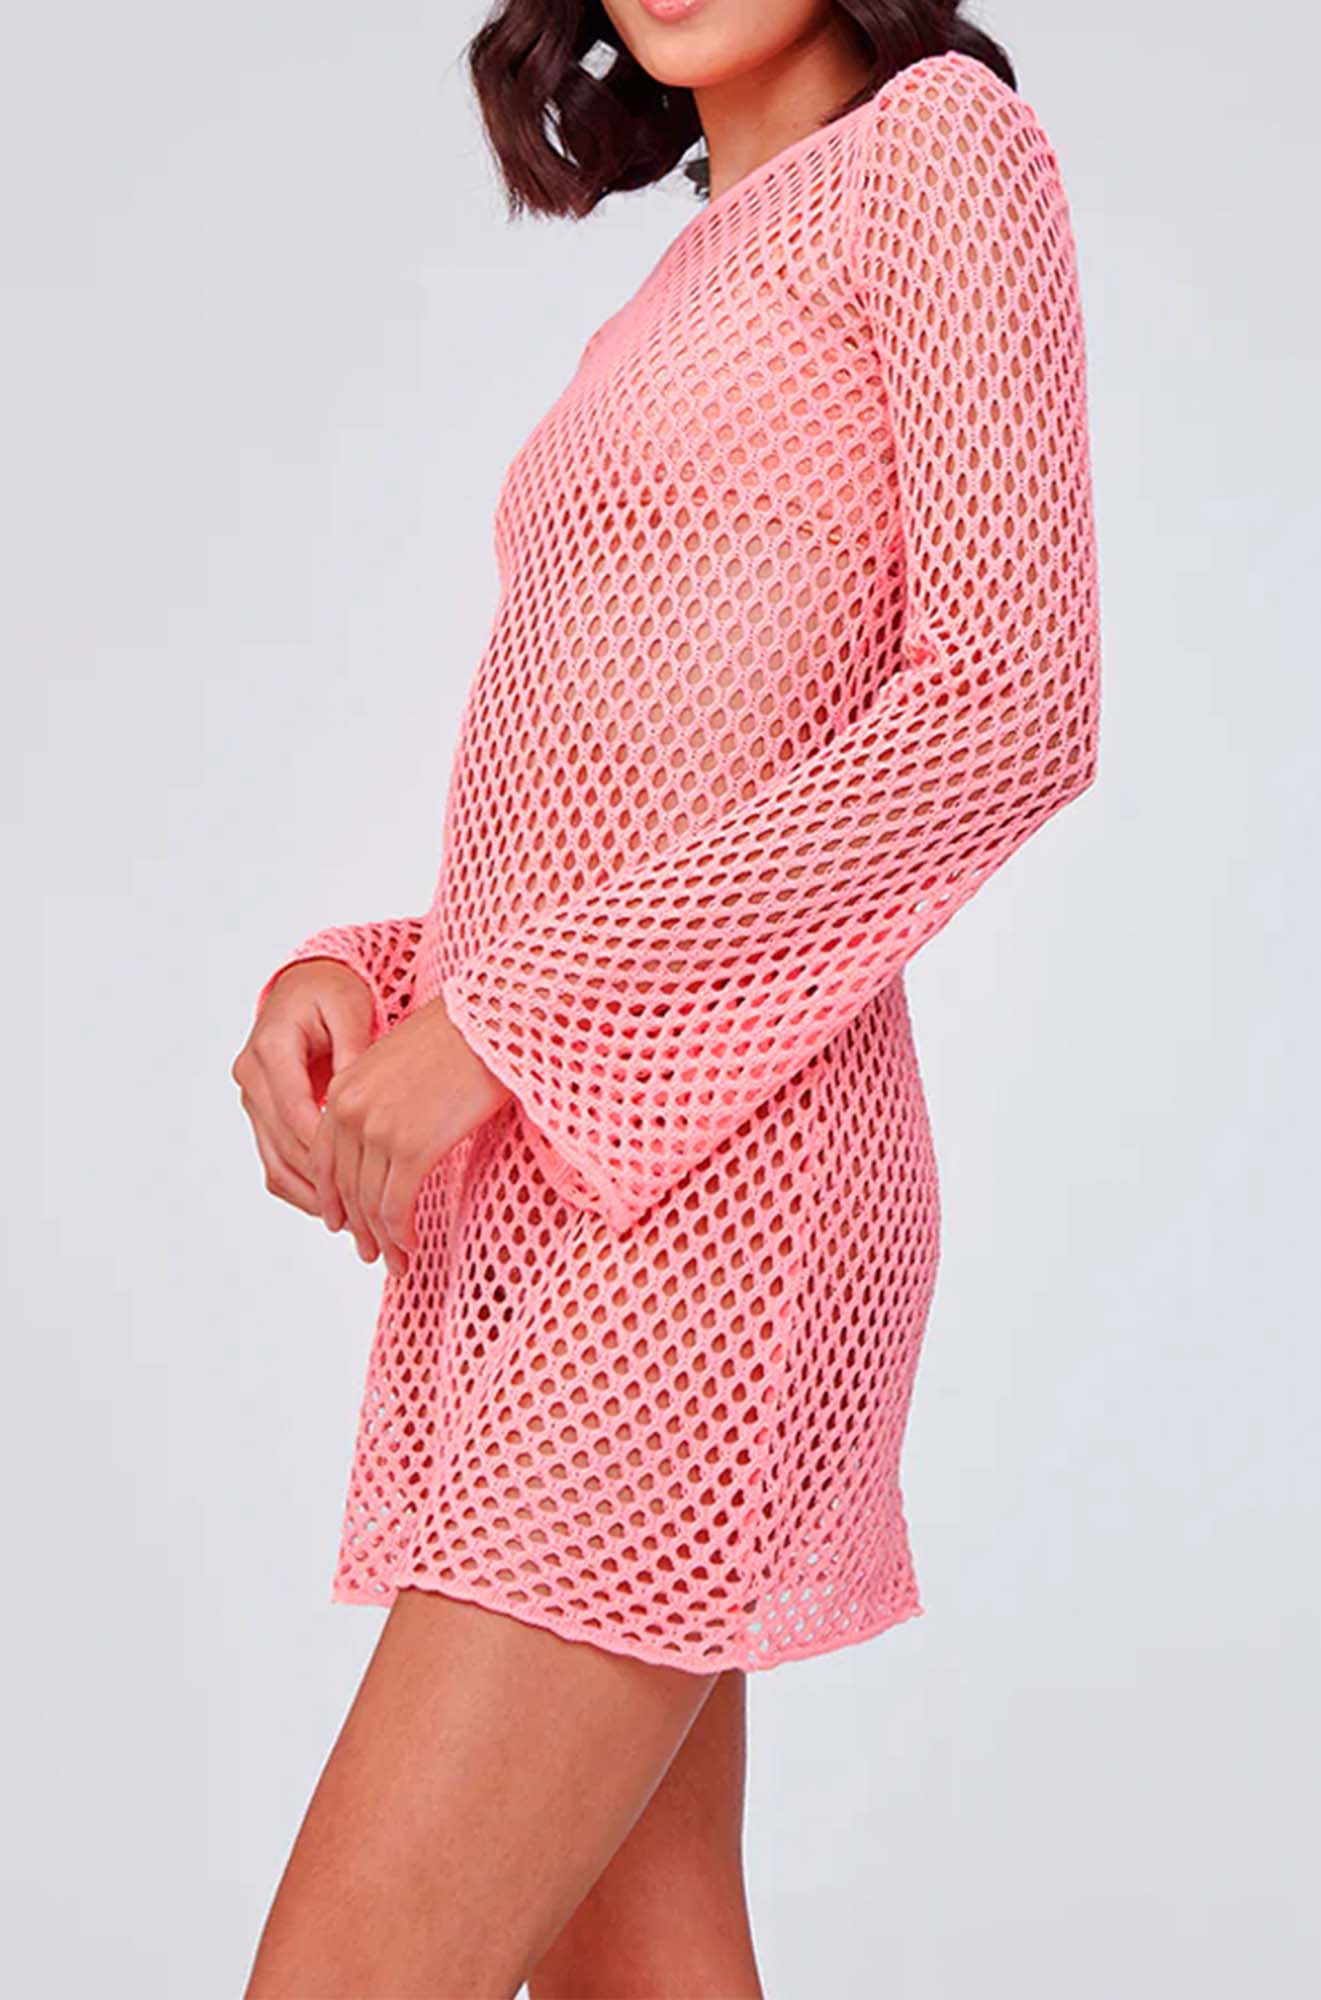 Capittana Lana Pink Crochet Dress